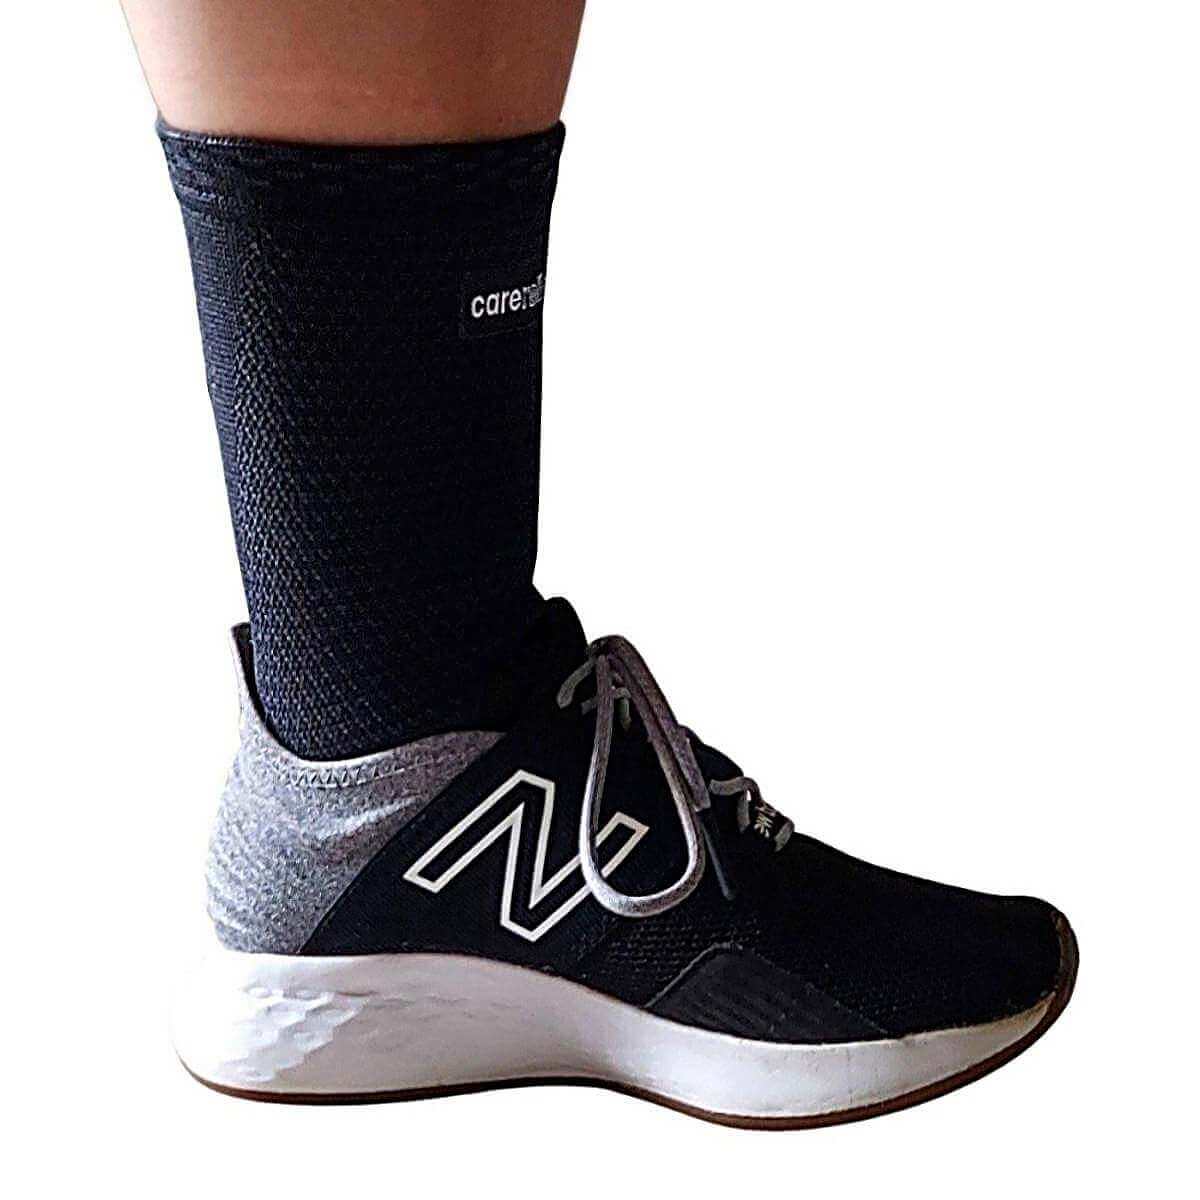 Soft ankelbind med kompression til børn og voksne, sort, 4 str. Ankel bandage AN20 er et åndbart støttebind uden generende syninger. Blød og komfortabel. Passer perfekt ned i skoen ved sport, løb og gang.